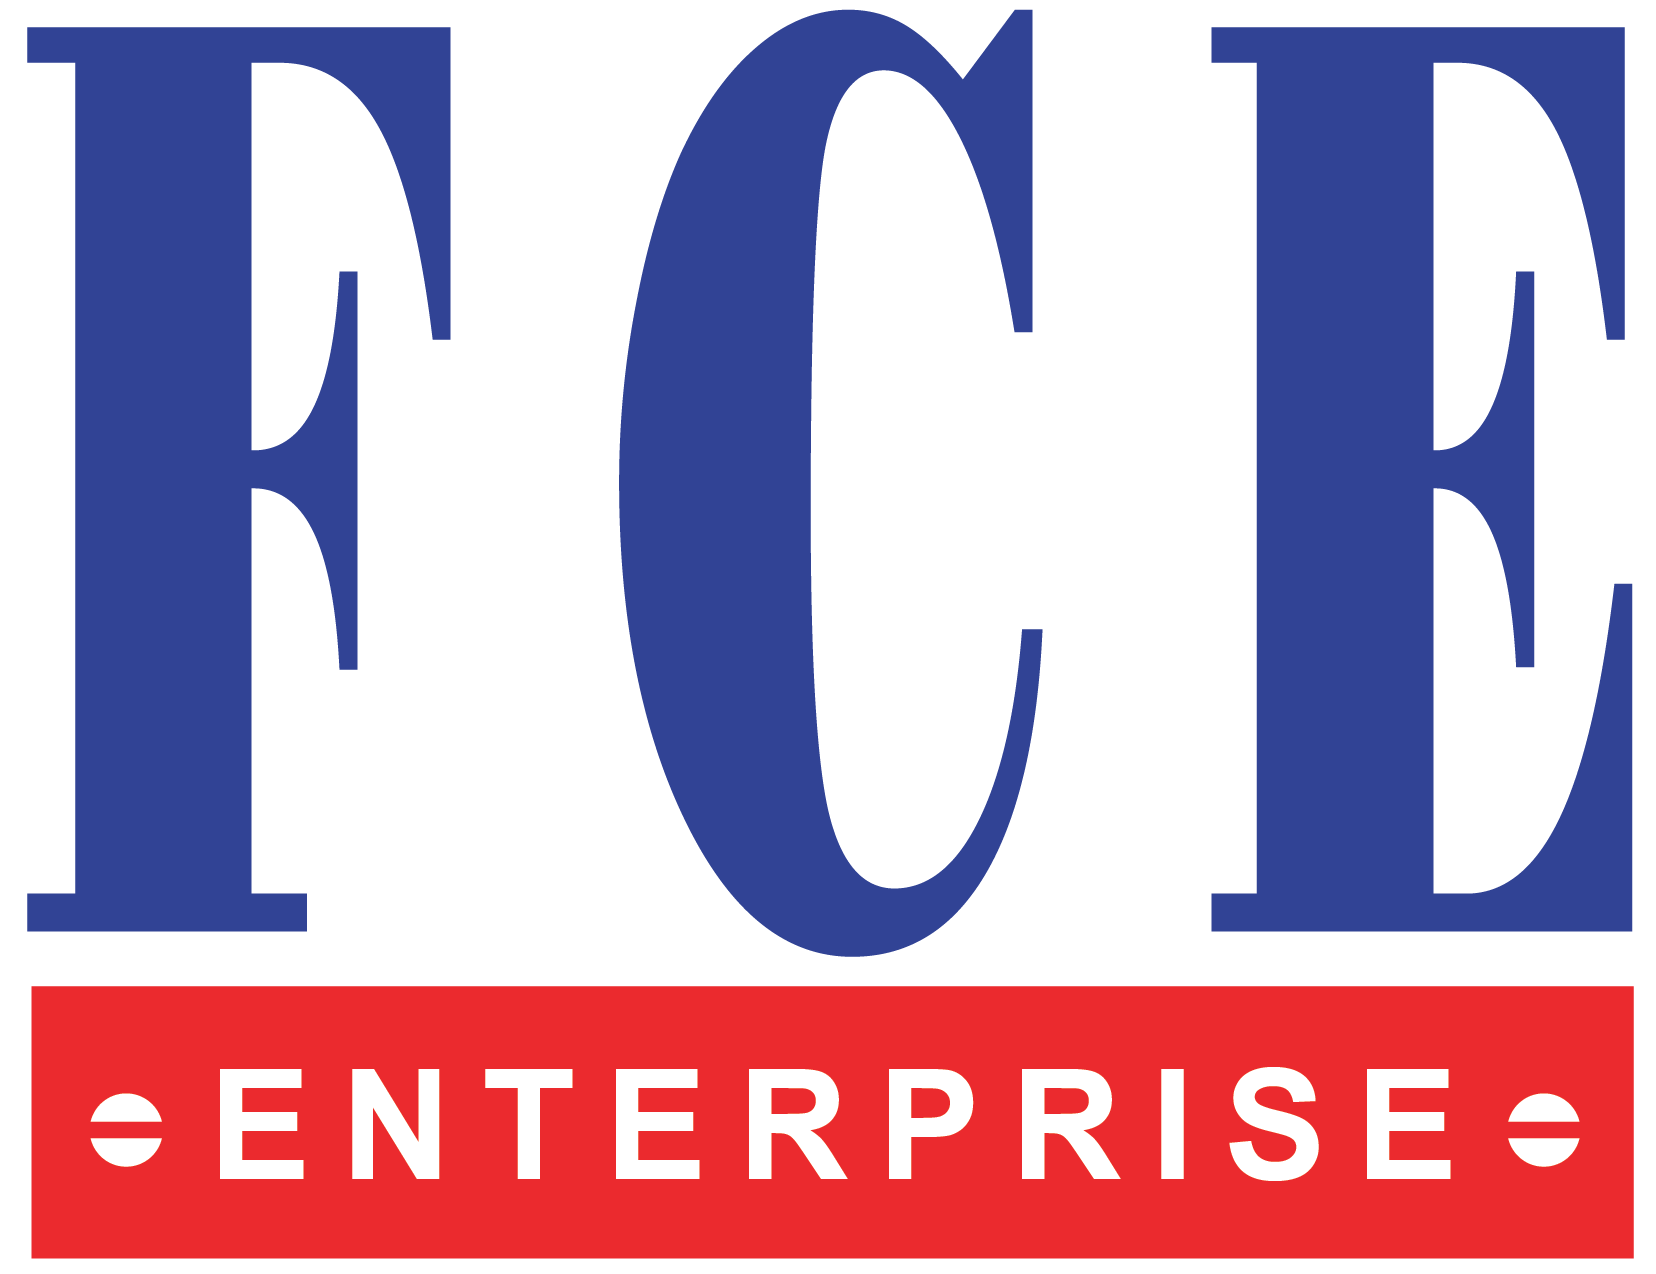 FCE Enterprise Sdn Bhd